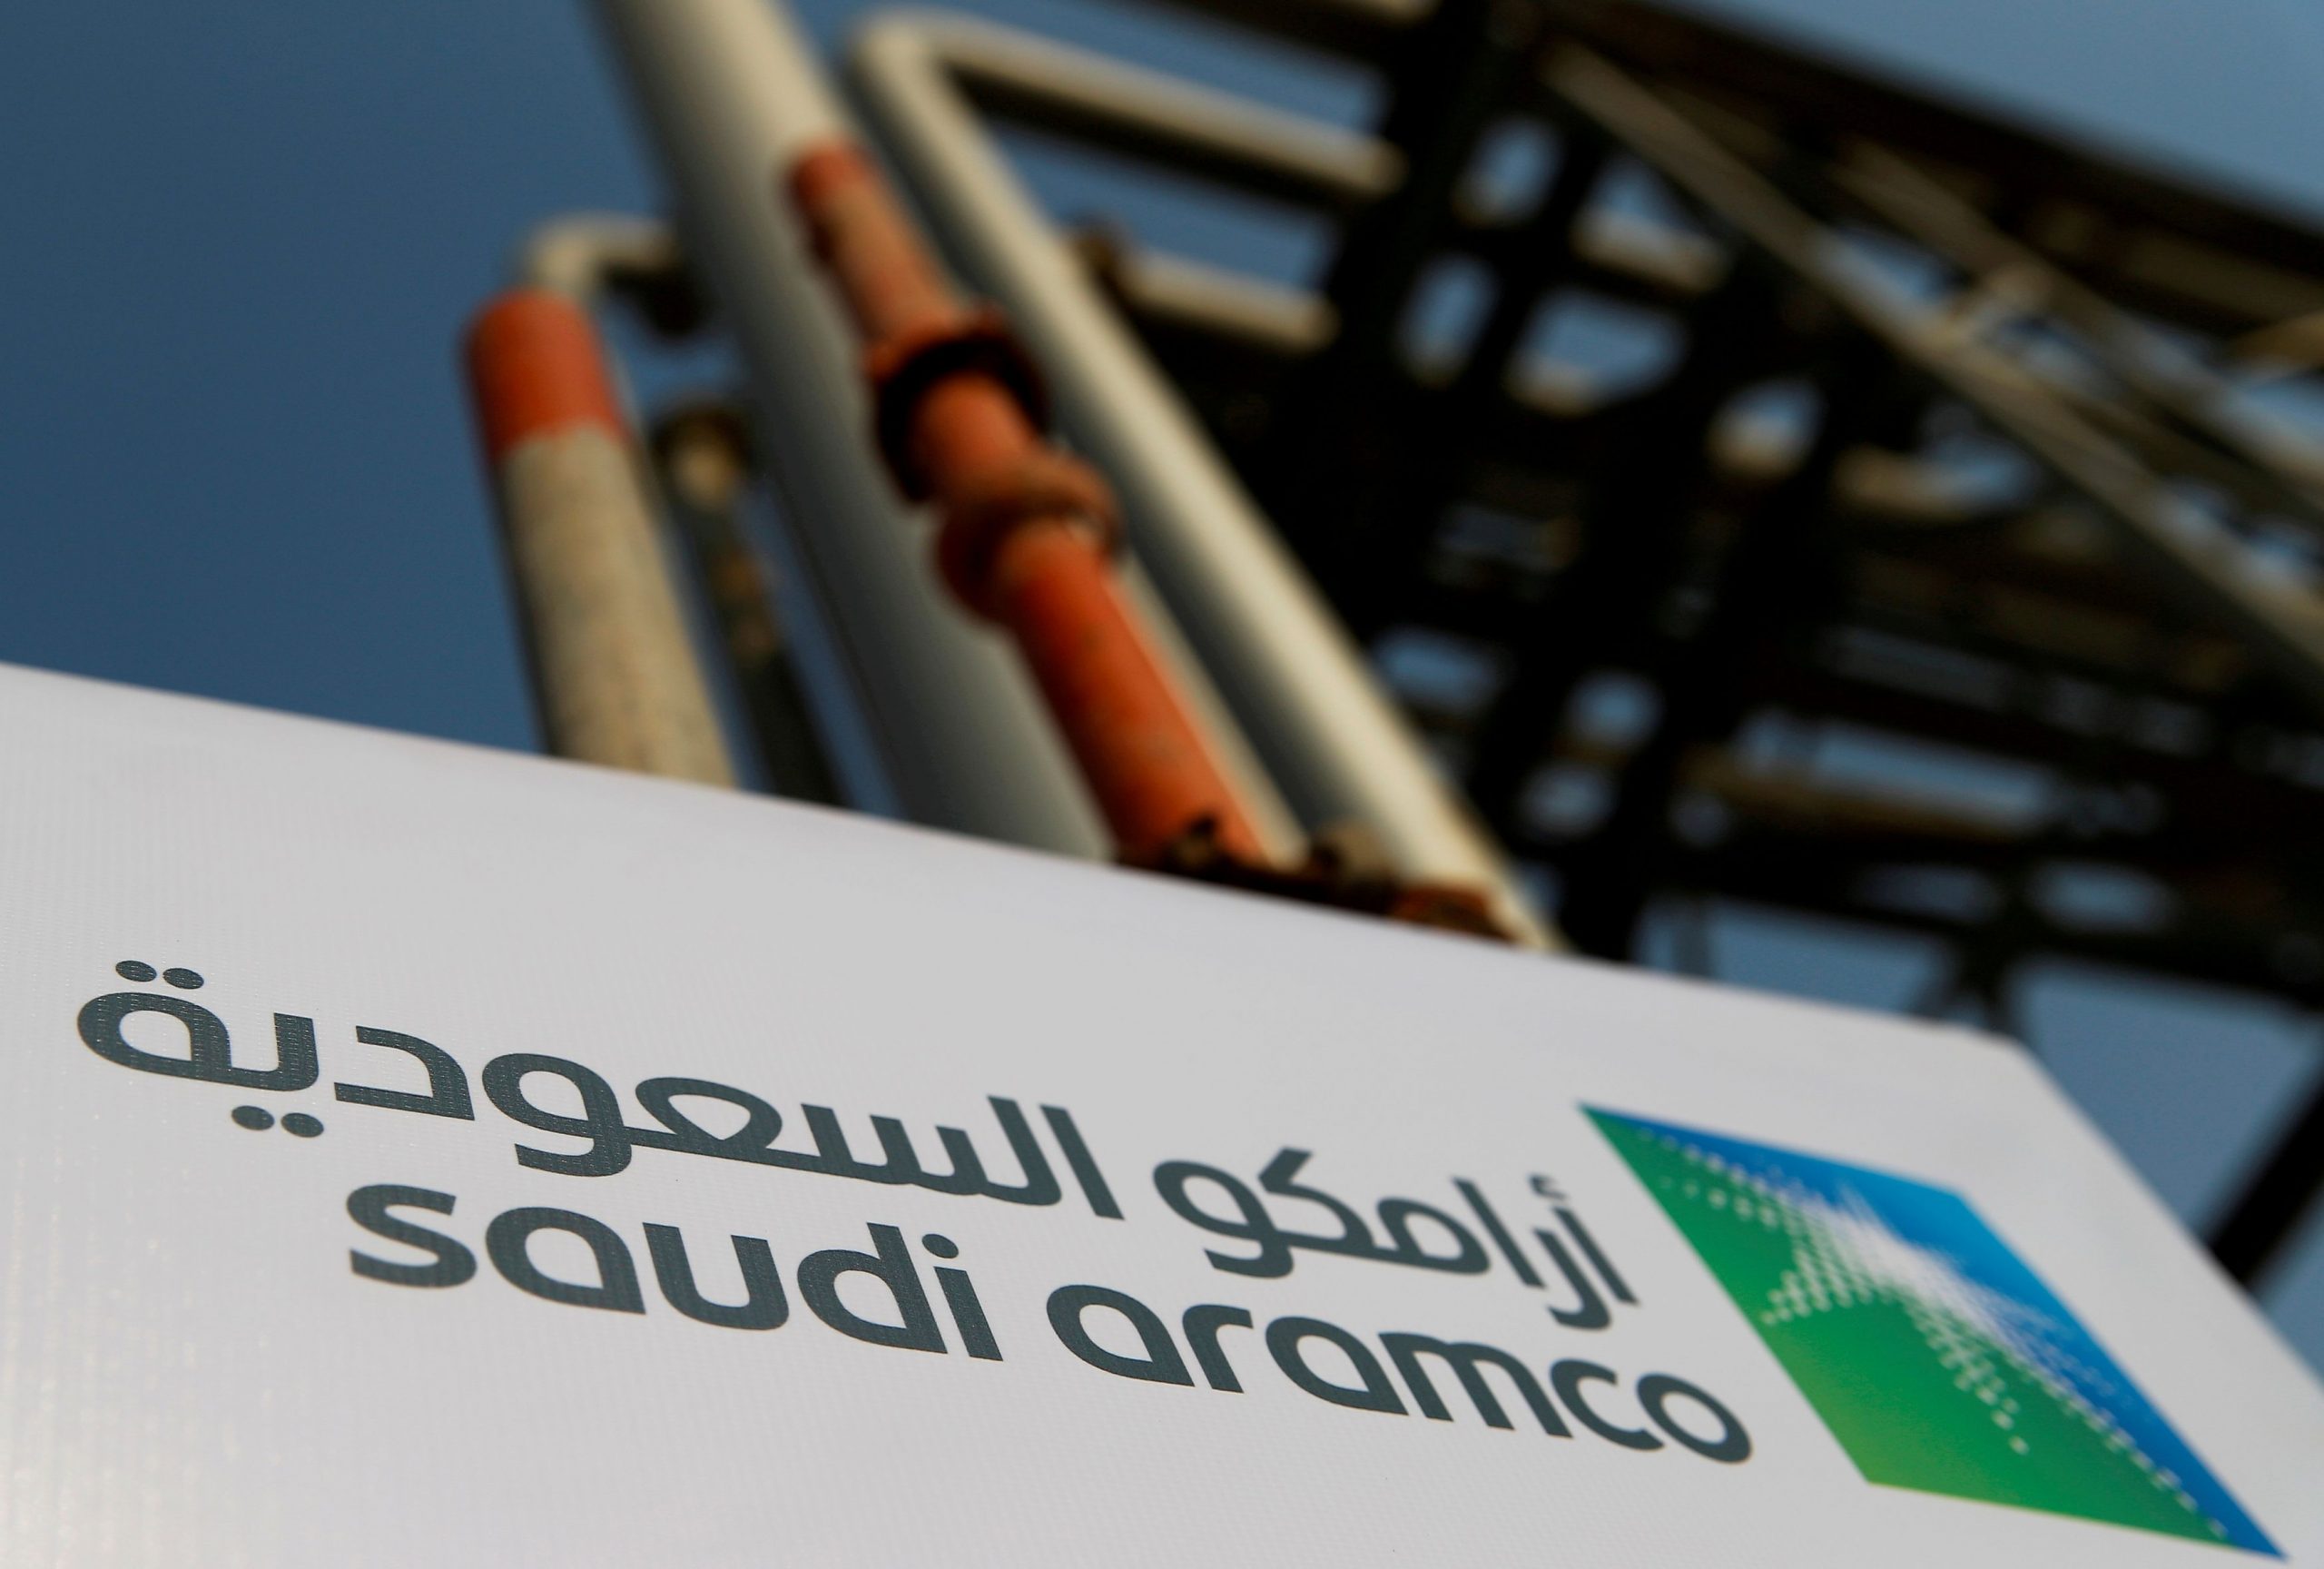 Σαουδική Αραβία – Τετραπλασιασμός κερδών τριμήνου για την Aramco